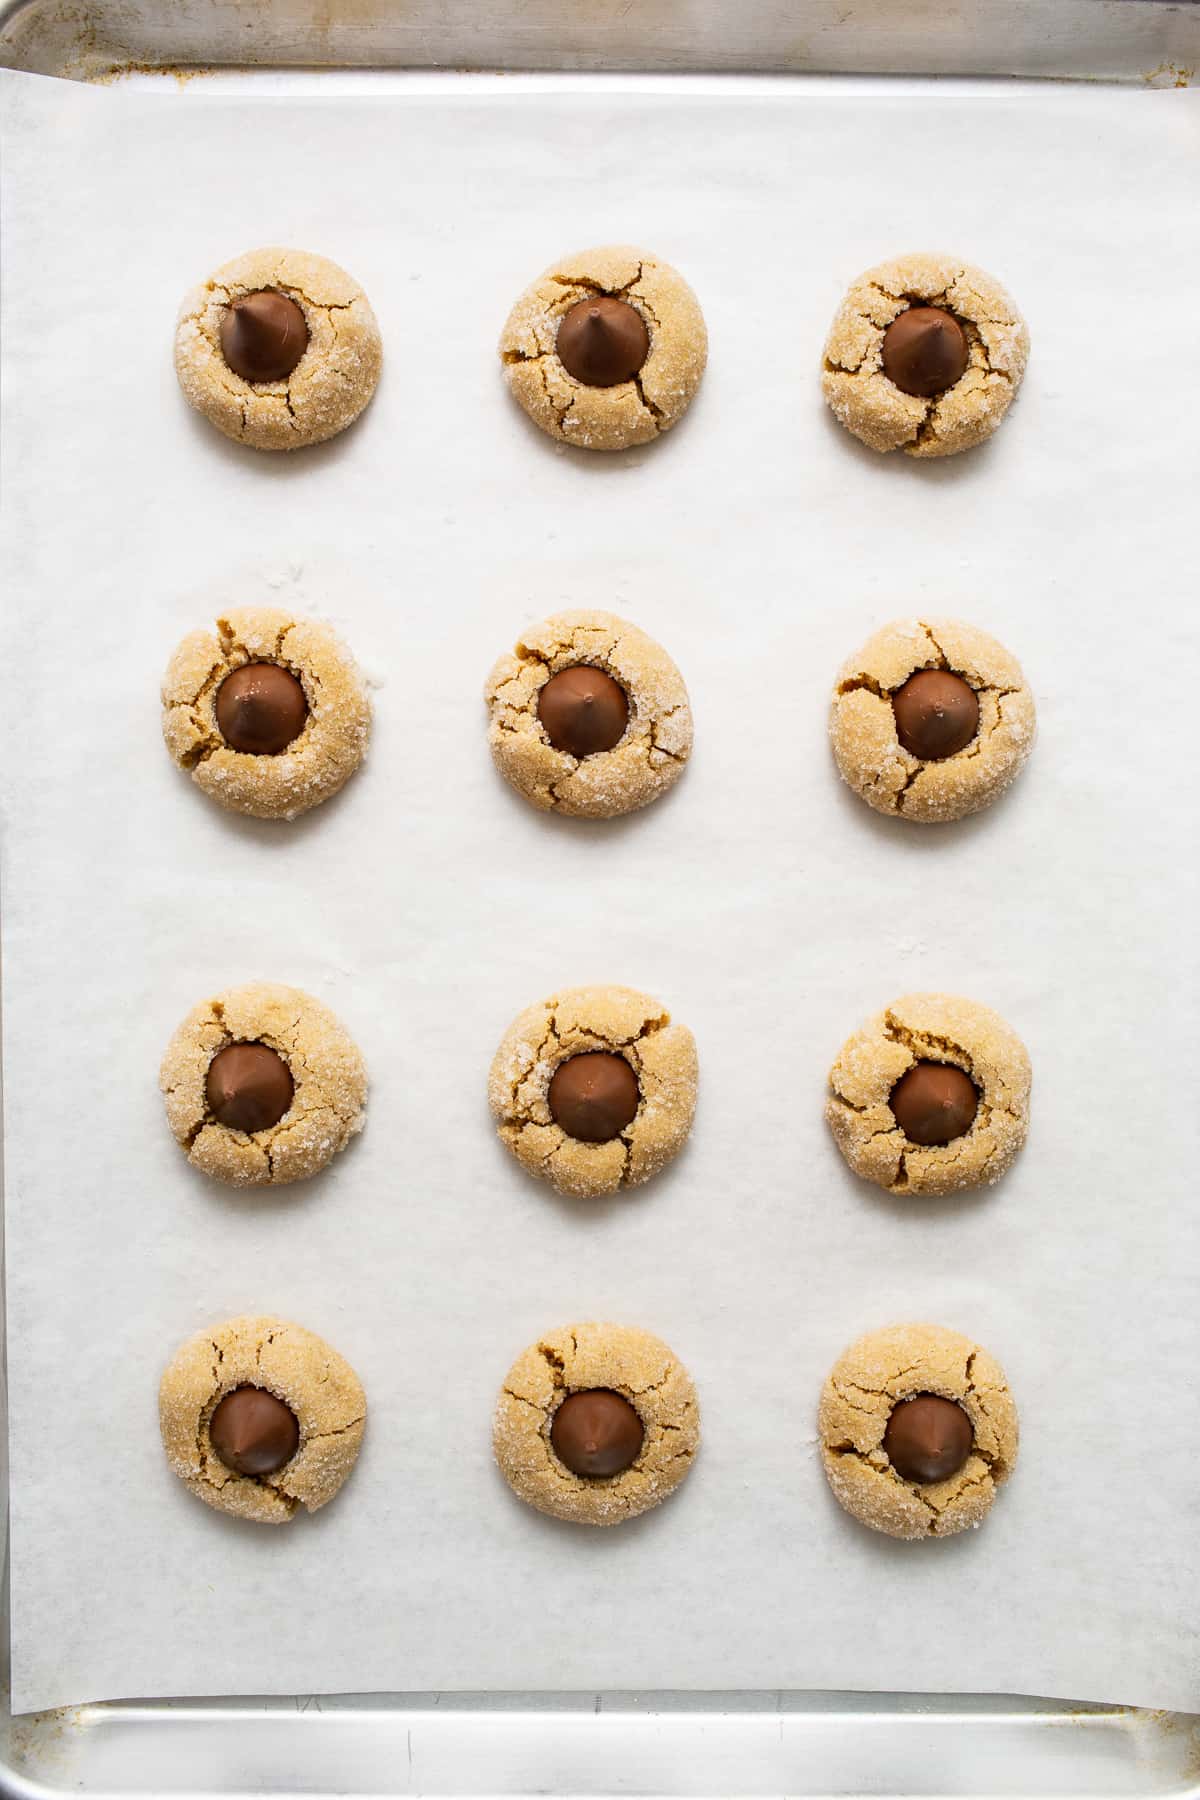 Peanut butter kiss cookies on a baking sheet.